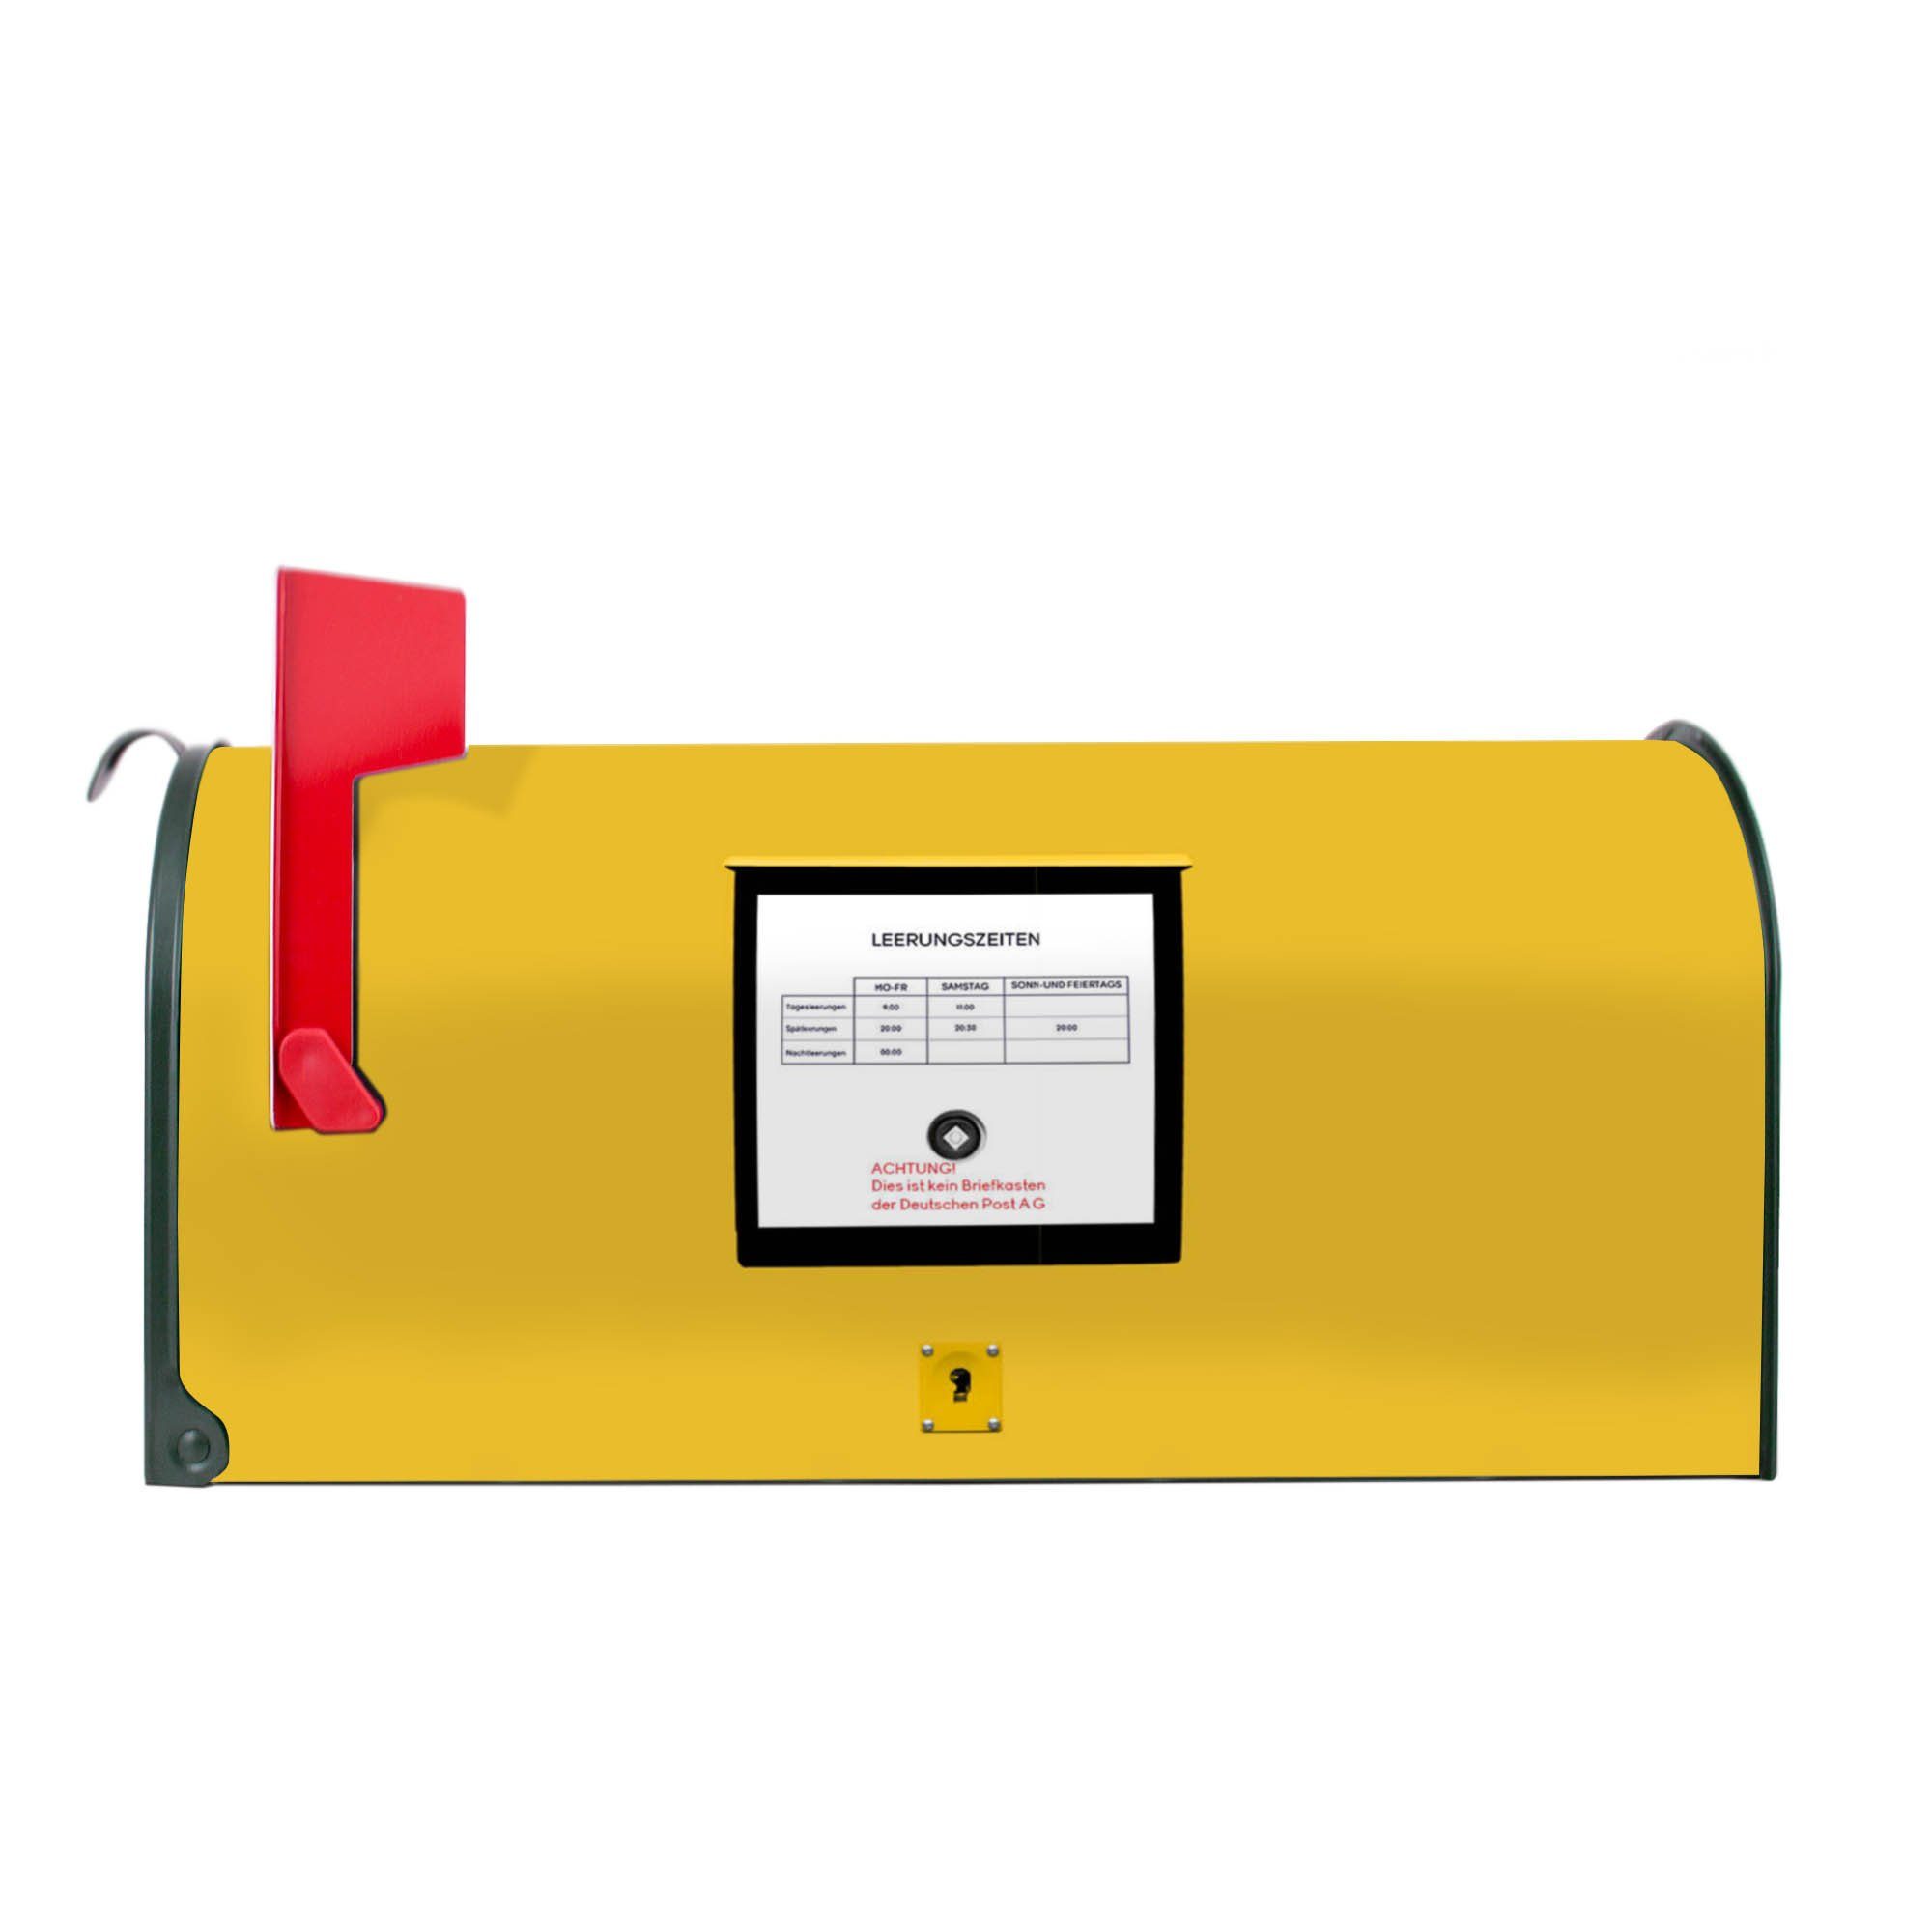 BANJADO US Mailbox Letterbox Stahl weiß inklusive silbernem Ständer Amerikanischer Briefkasten 51x22x17cm mit Motiv Dünen